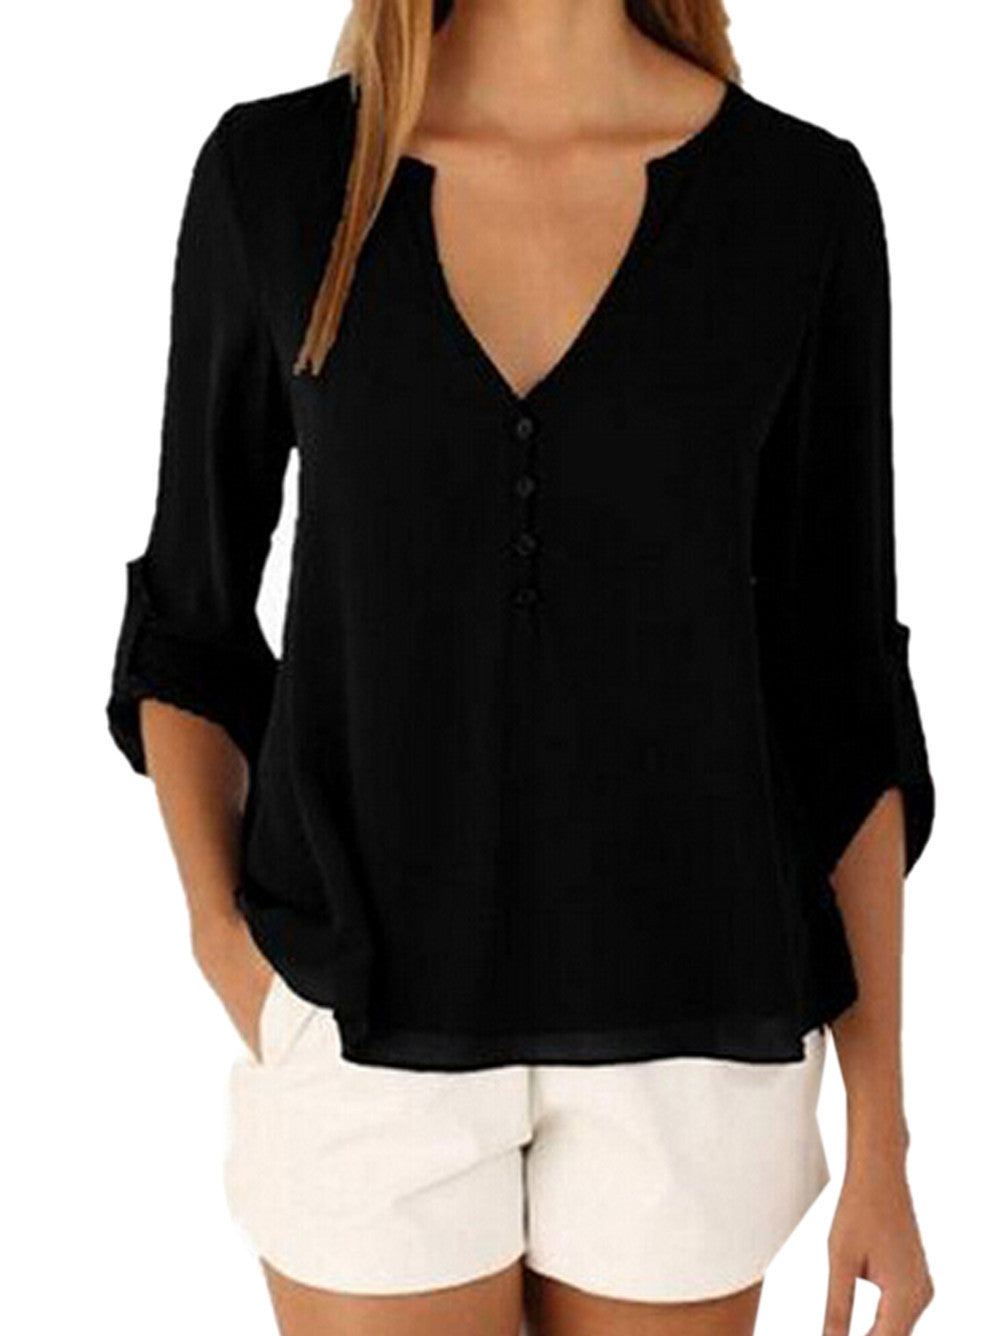 Sheer V Neck Top Button High Low Shirt Blouse Loose Sheer Chiffon Casual Casual Shirt Women Elegant Office Wear Tops